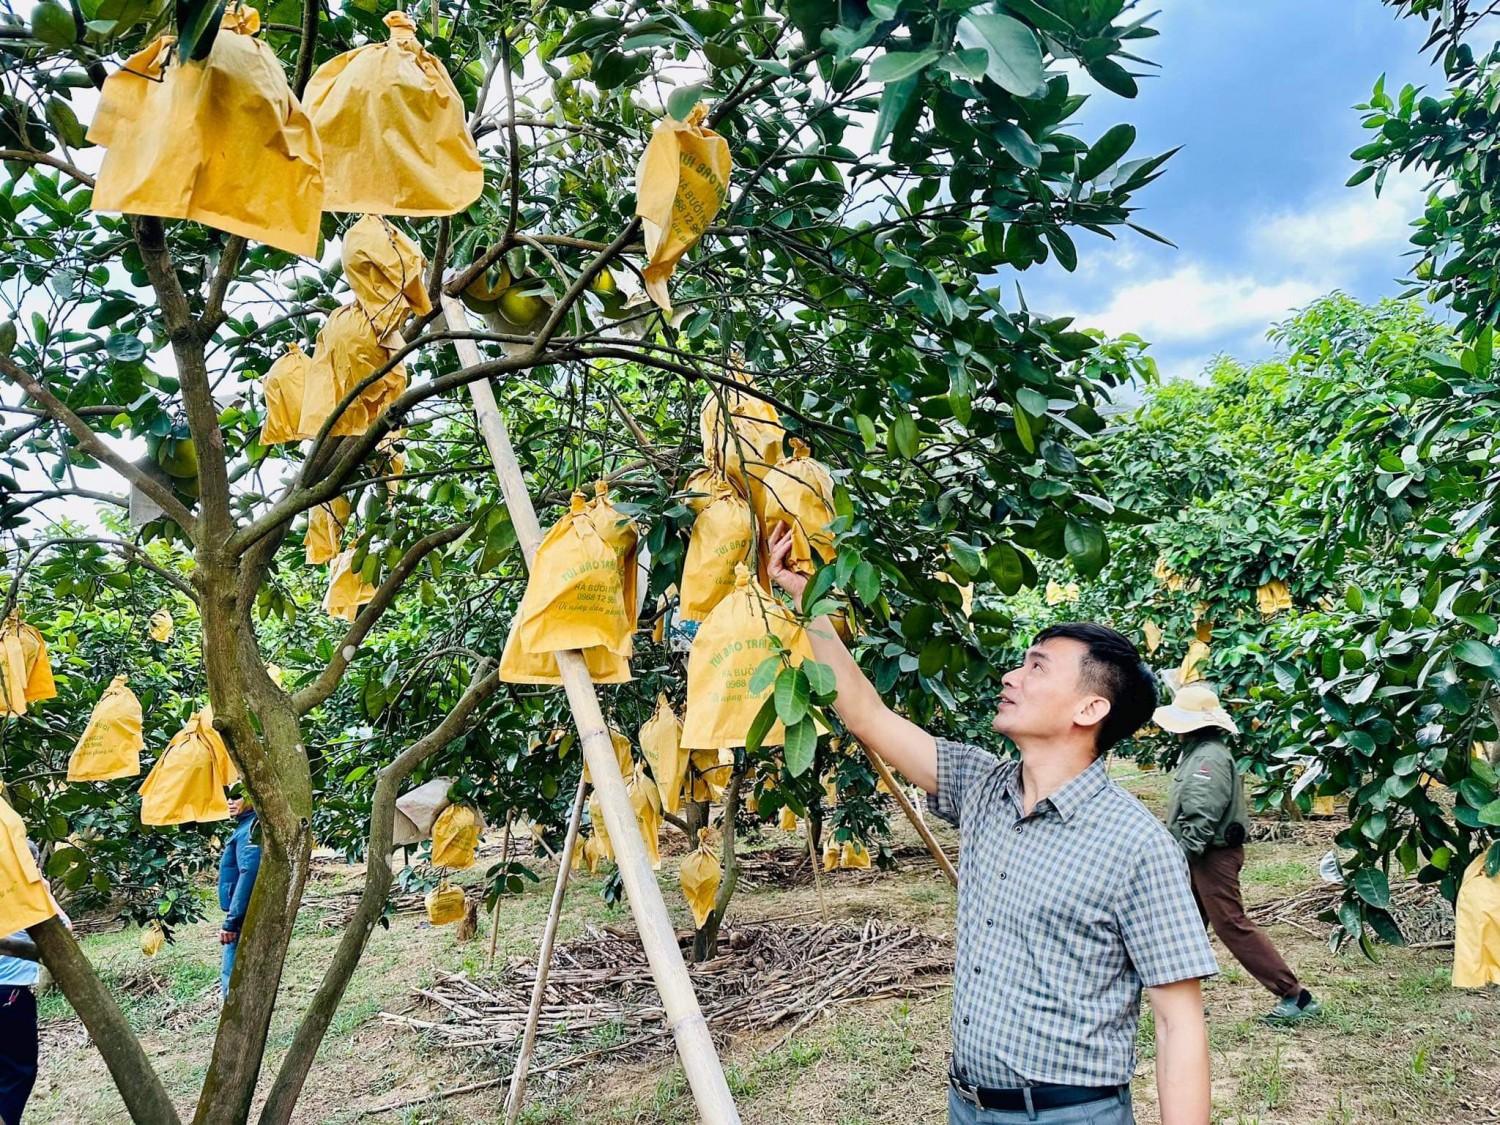 Đồng chí Phan Văn Hùng Giám đốc TT Hỗ trợ Nông dân đang đi khảo sát kiểm tra mô hình bưởi Phúc Trạch tại huyện Hương Khê